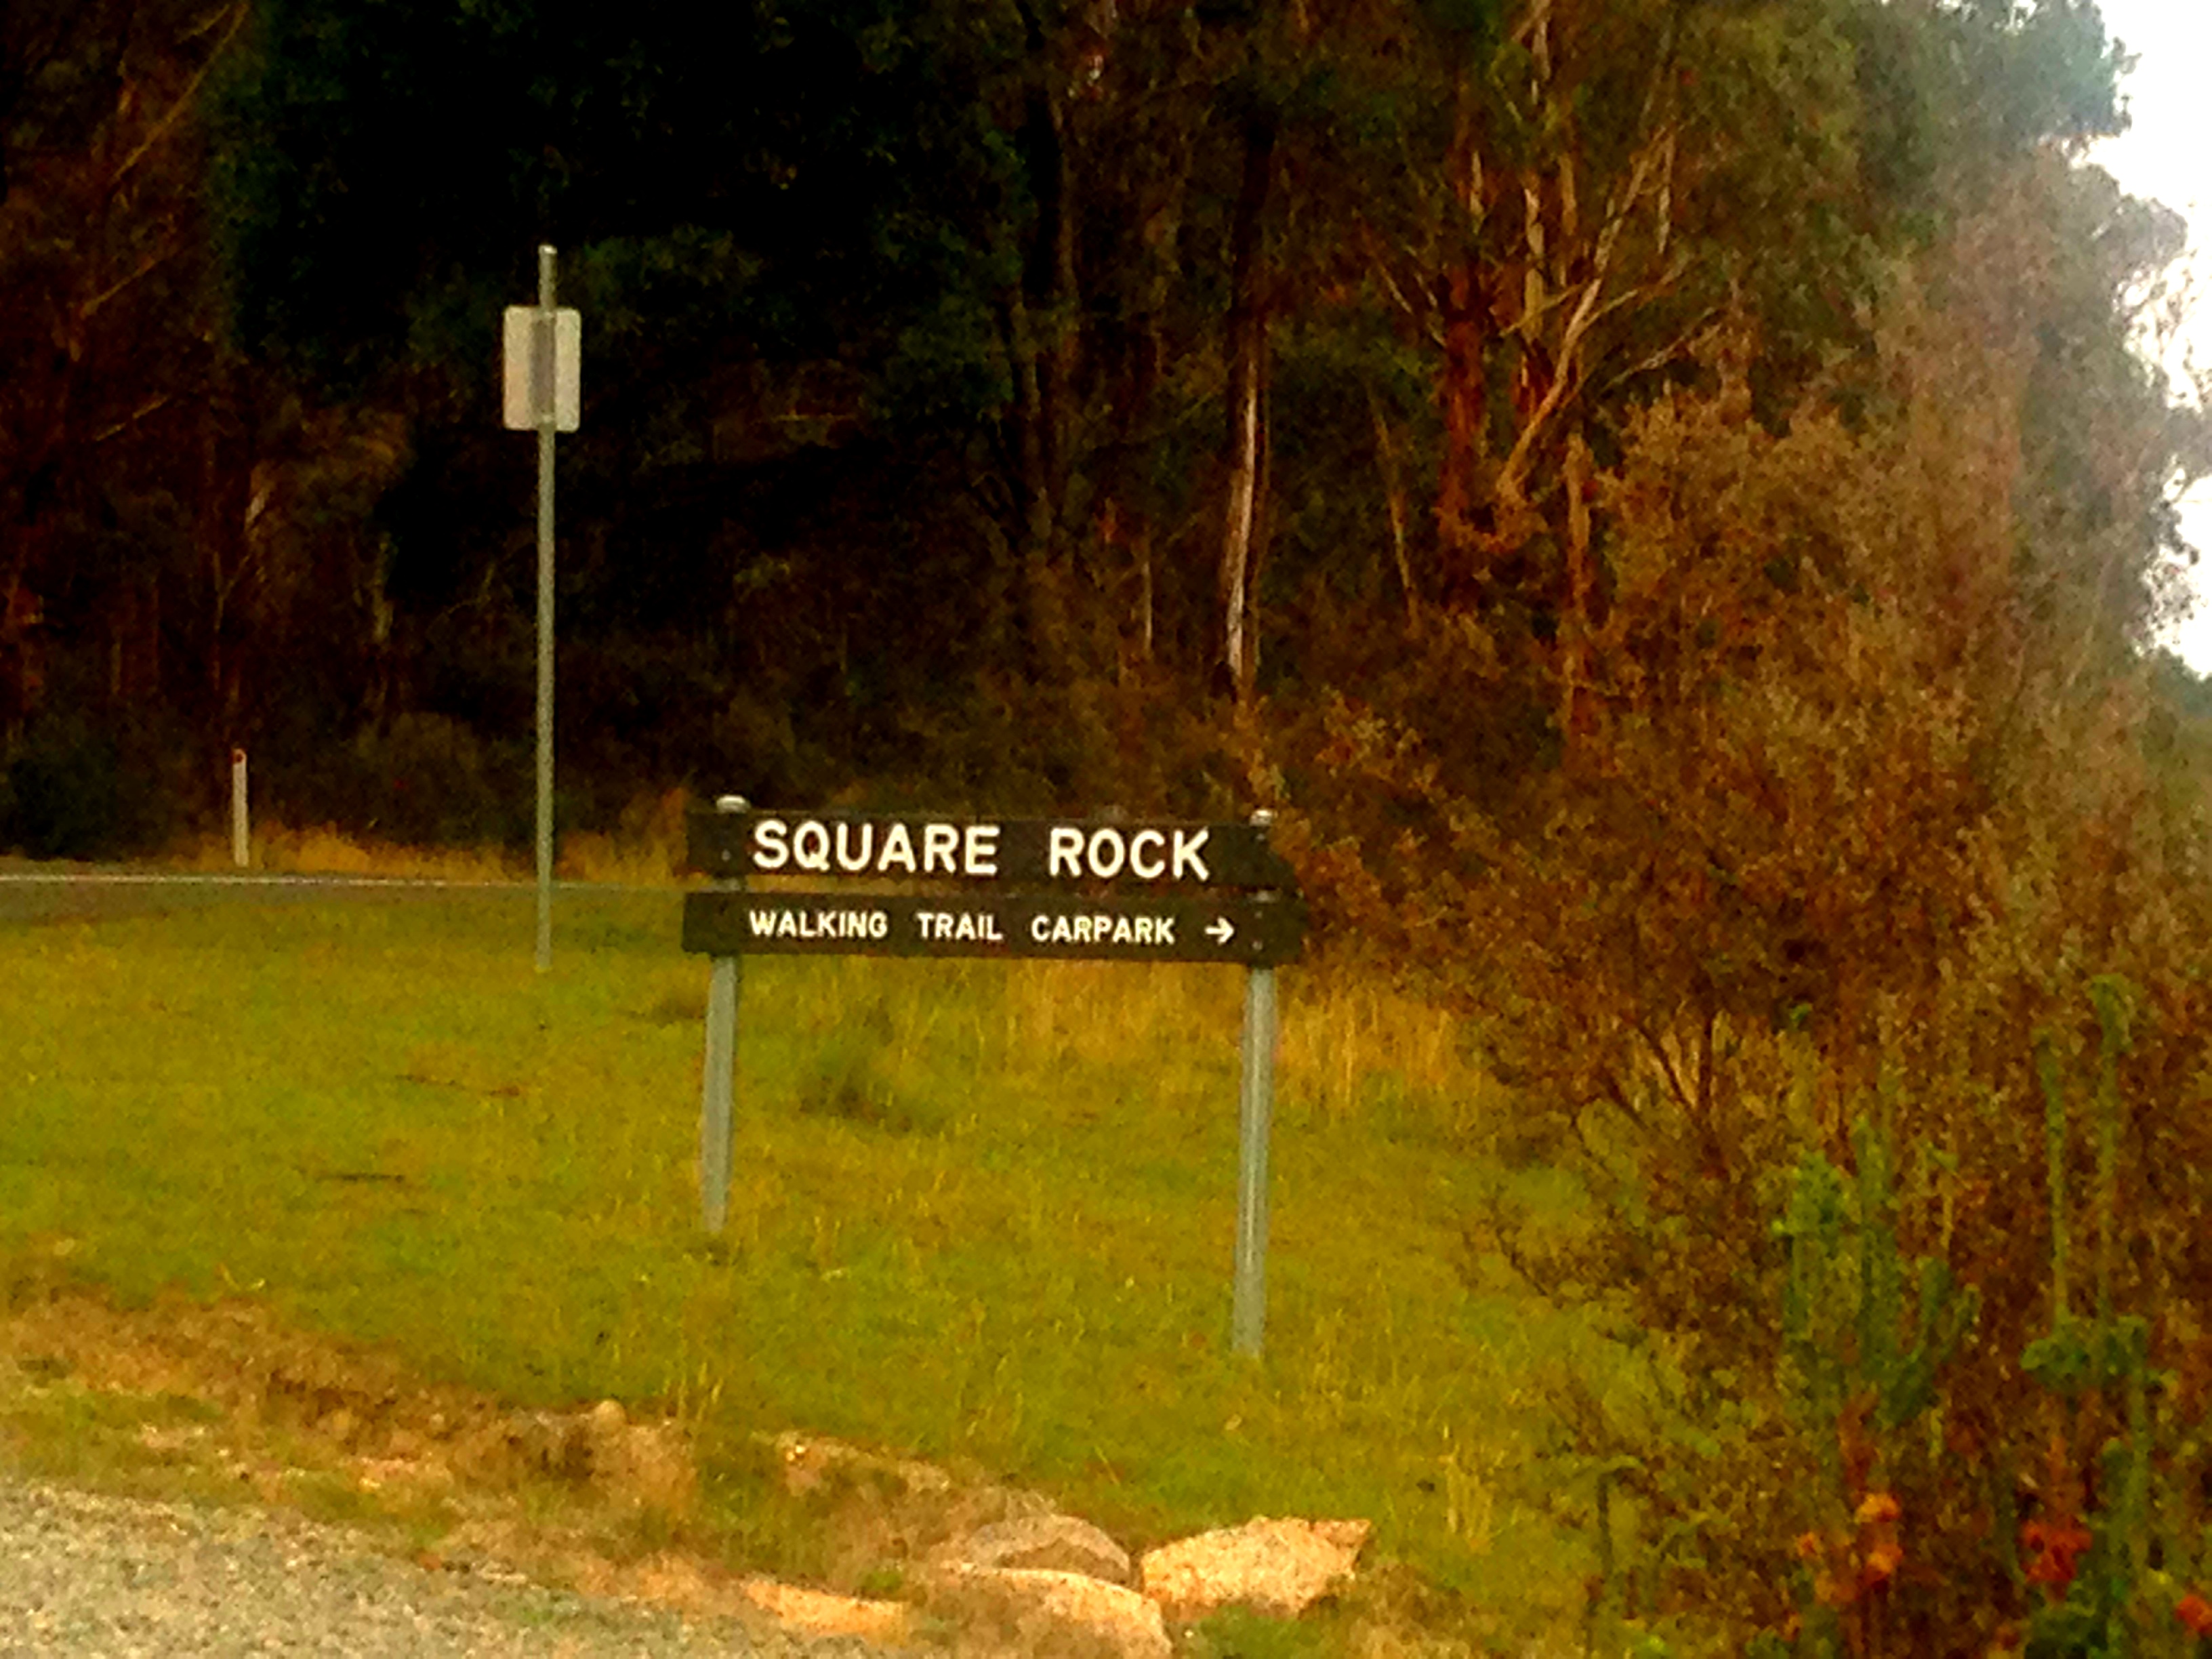 Square Rock Walking Trail Carpark